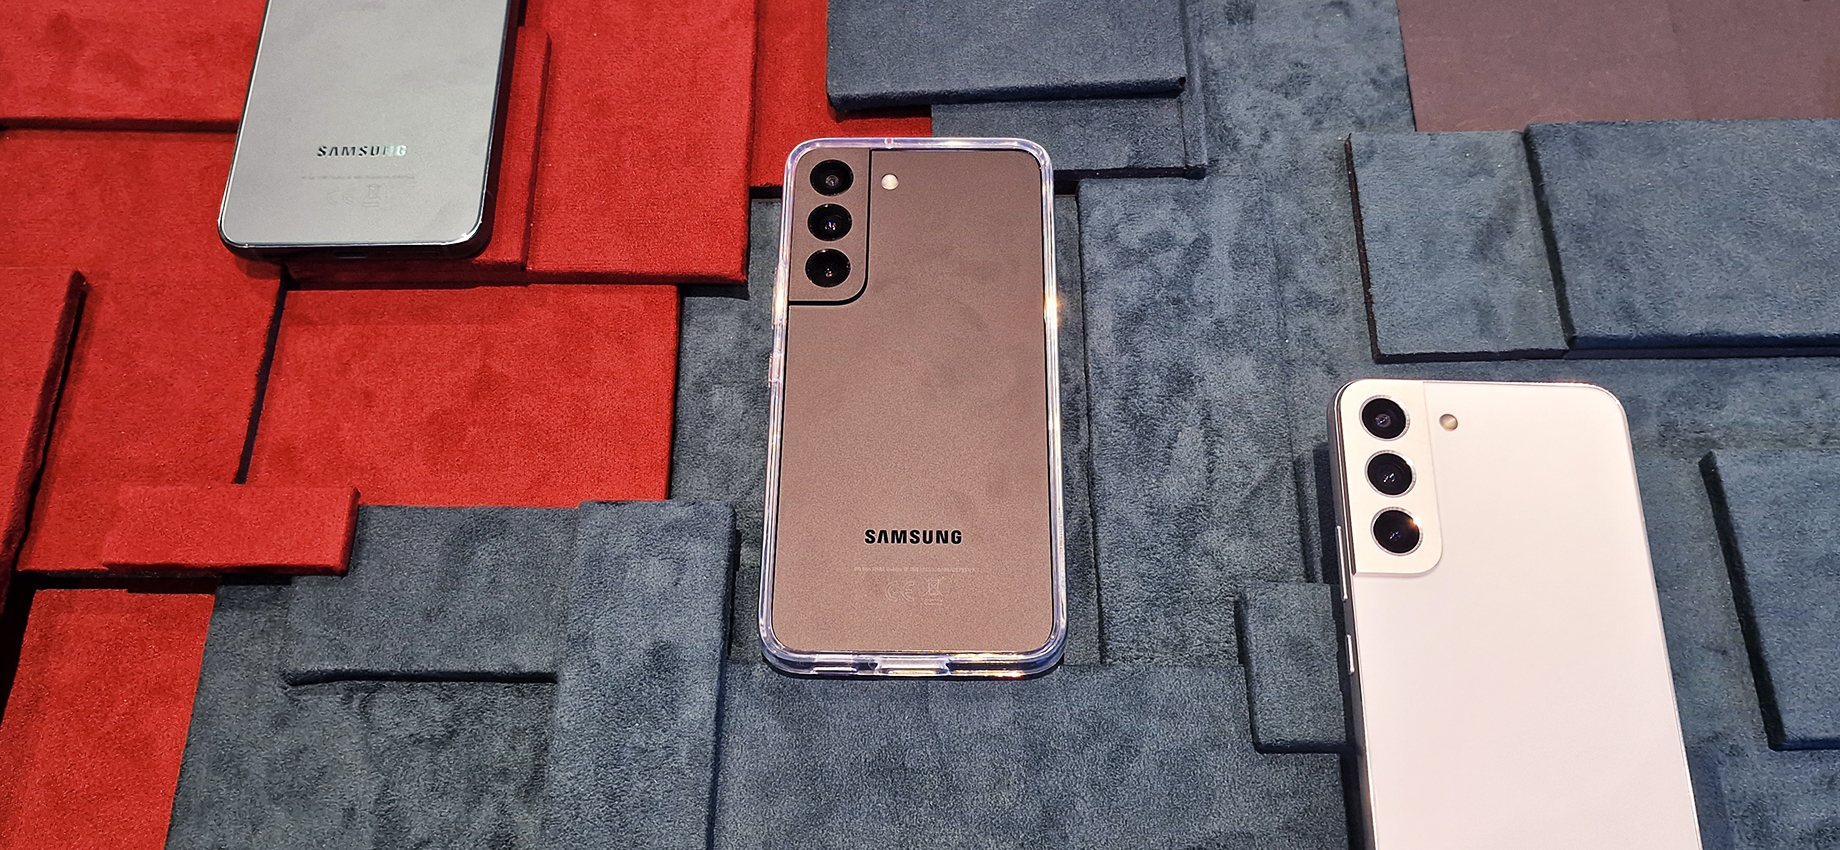 Samsung показала смартфоны S22 и обновленный планшет Tab S8: главное о новинках